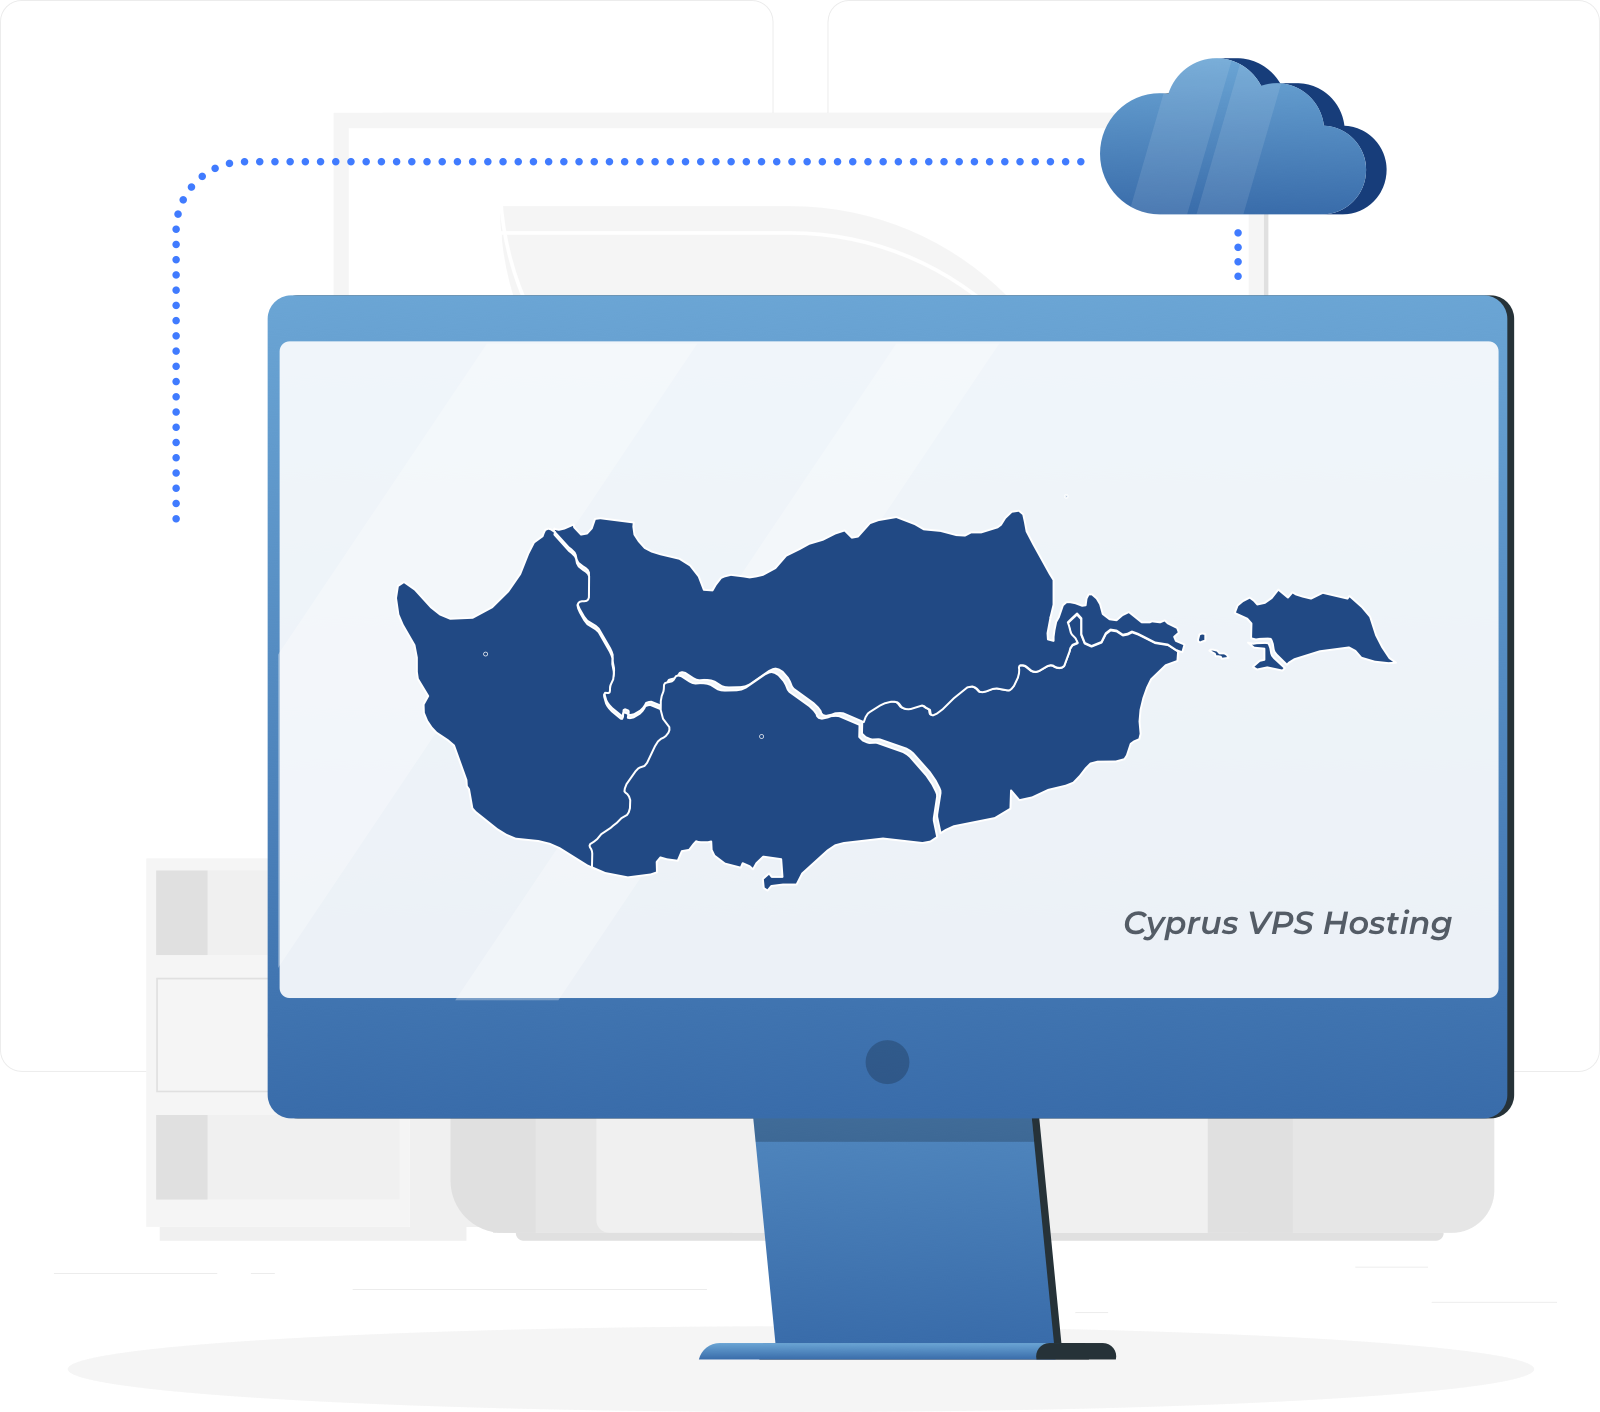 塞浦路斯 VPS，和高利用率的云服务